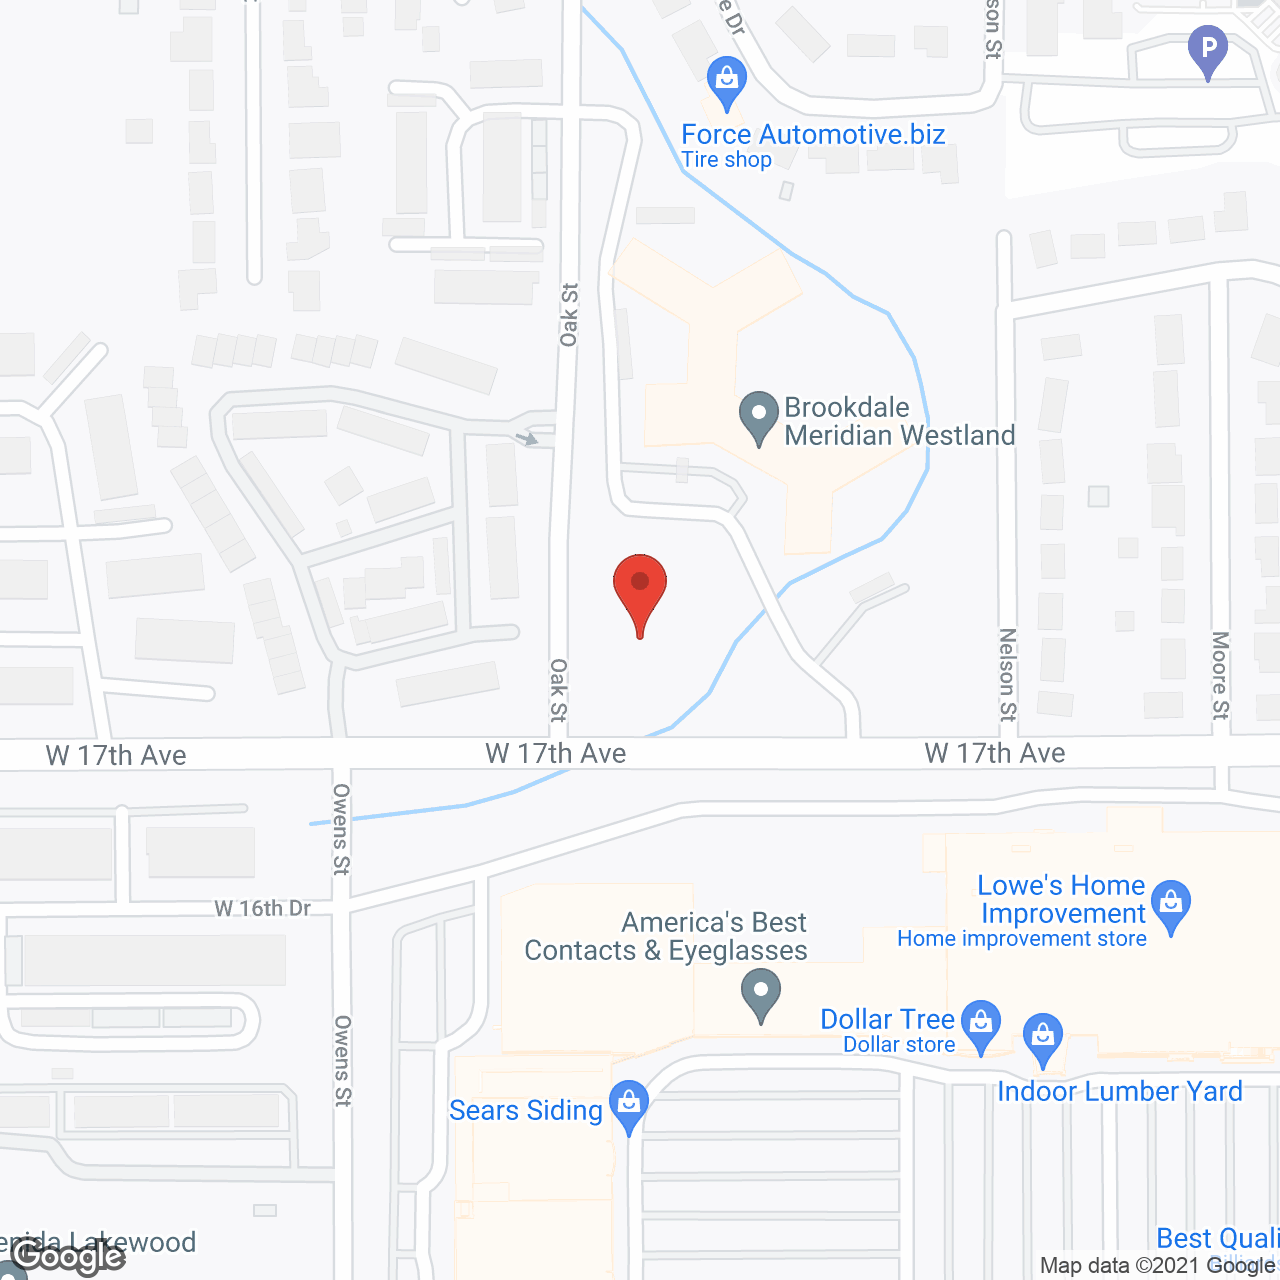 Brookdale Meridian Westland in google map